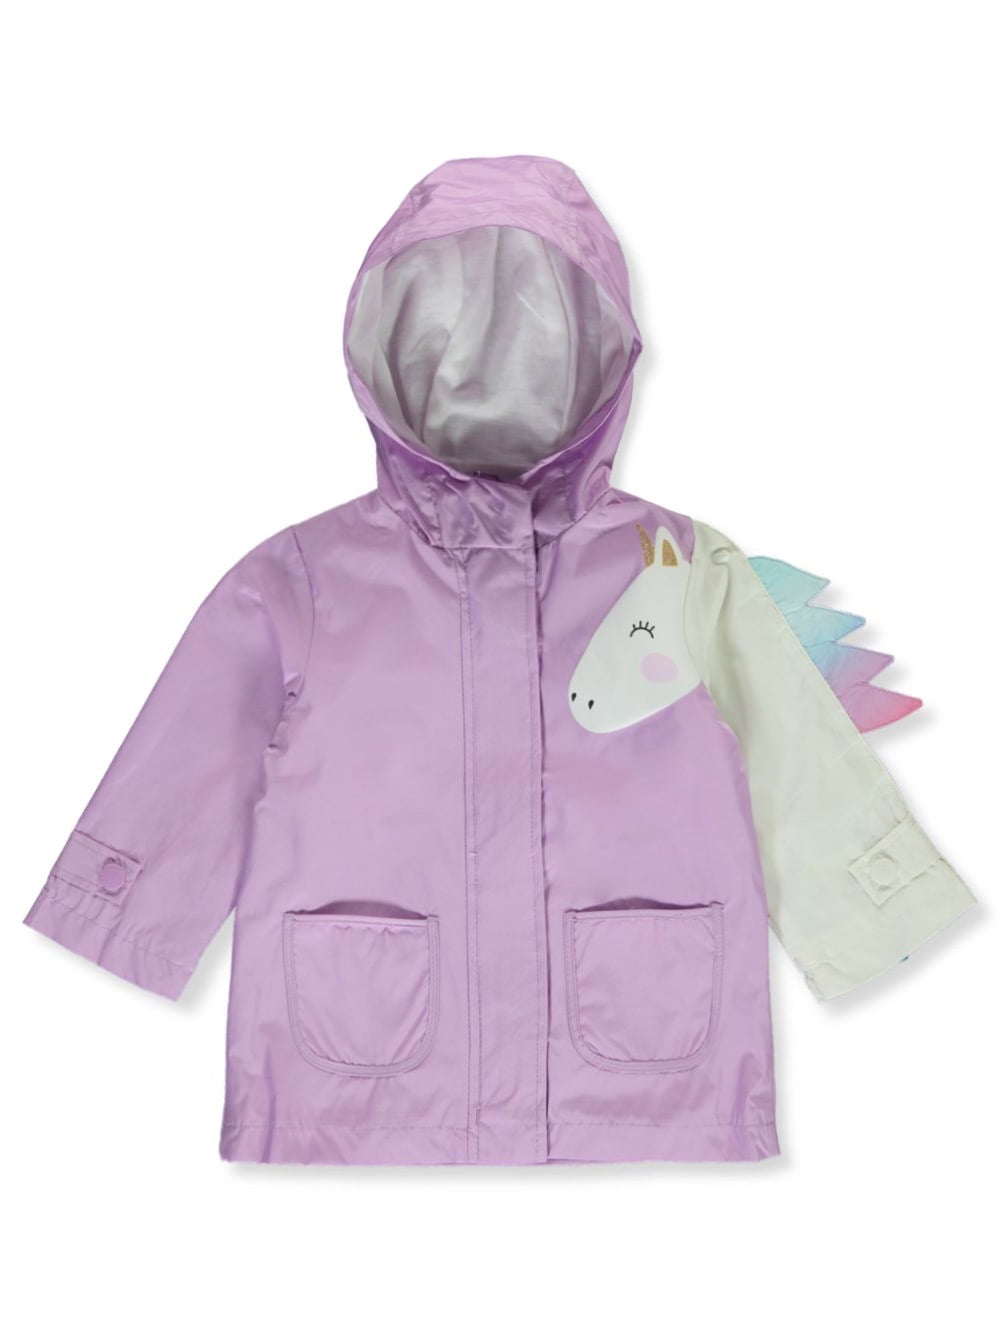 baby unicorn jacket